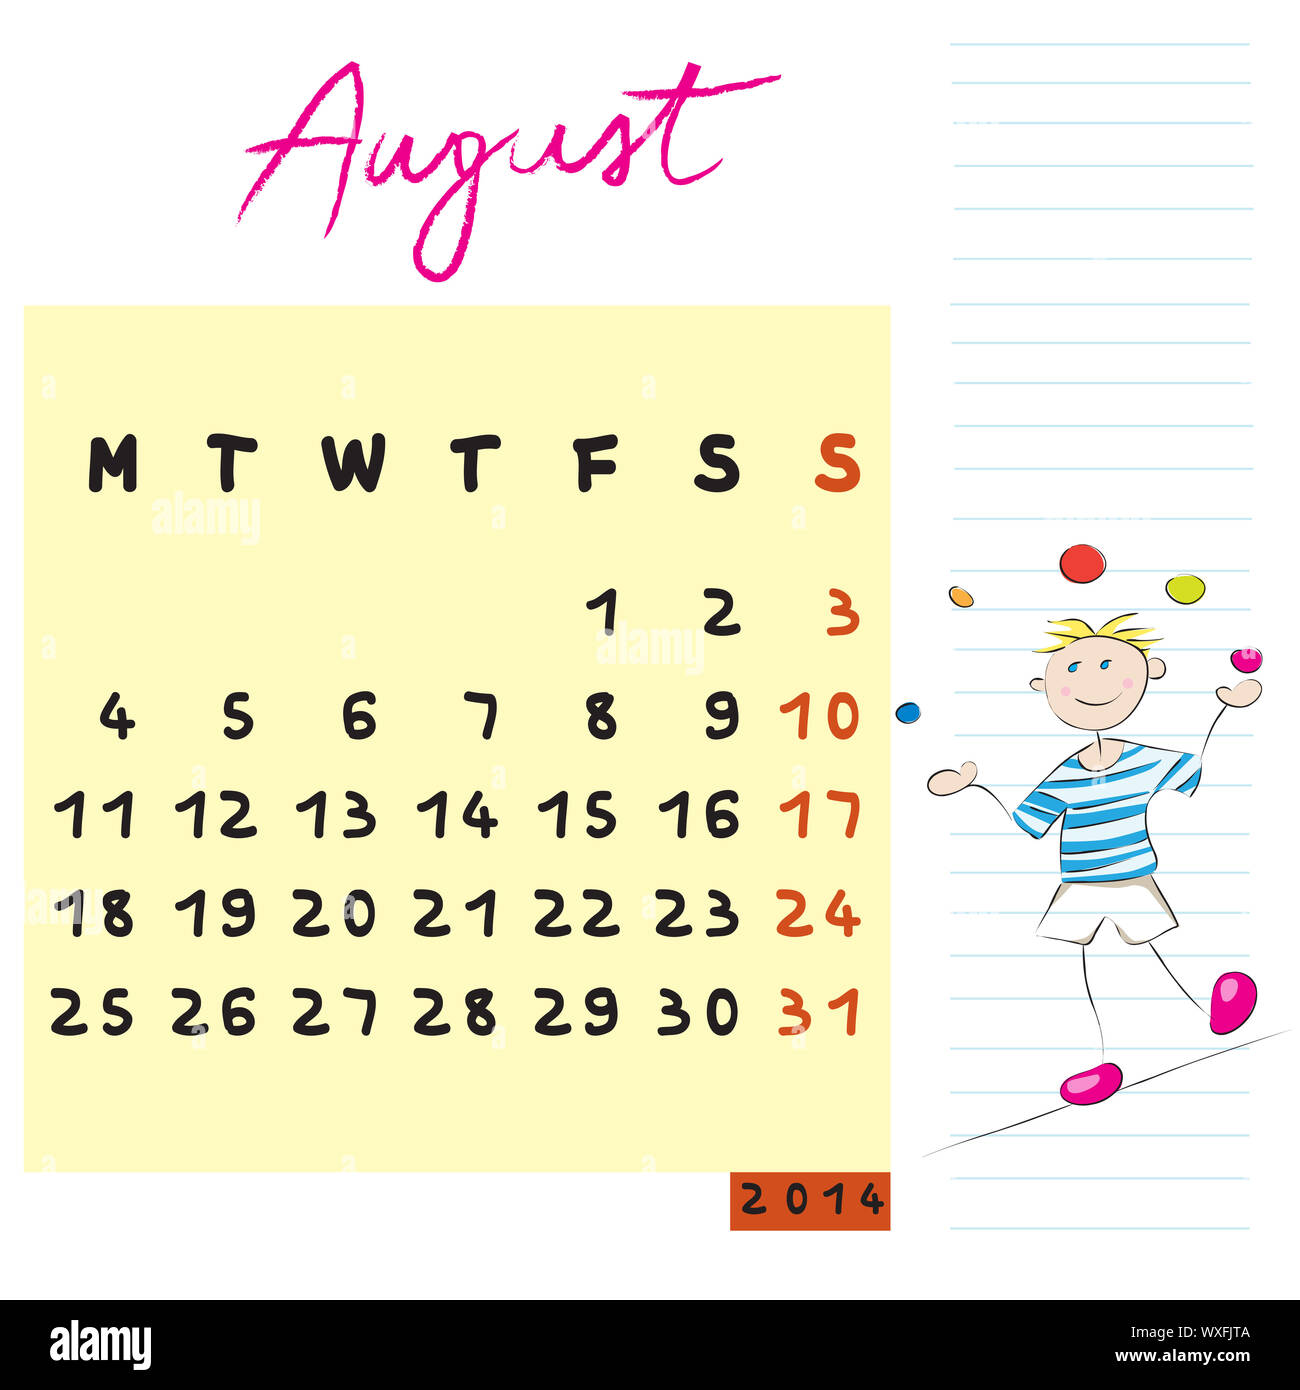 August 2014 Kalender Illustration, Hand gezeichnet Design mit Kind, die Gefahrliebender student Profil für internationale Schulen Stockfoto